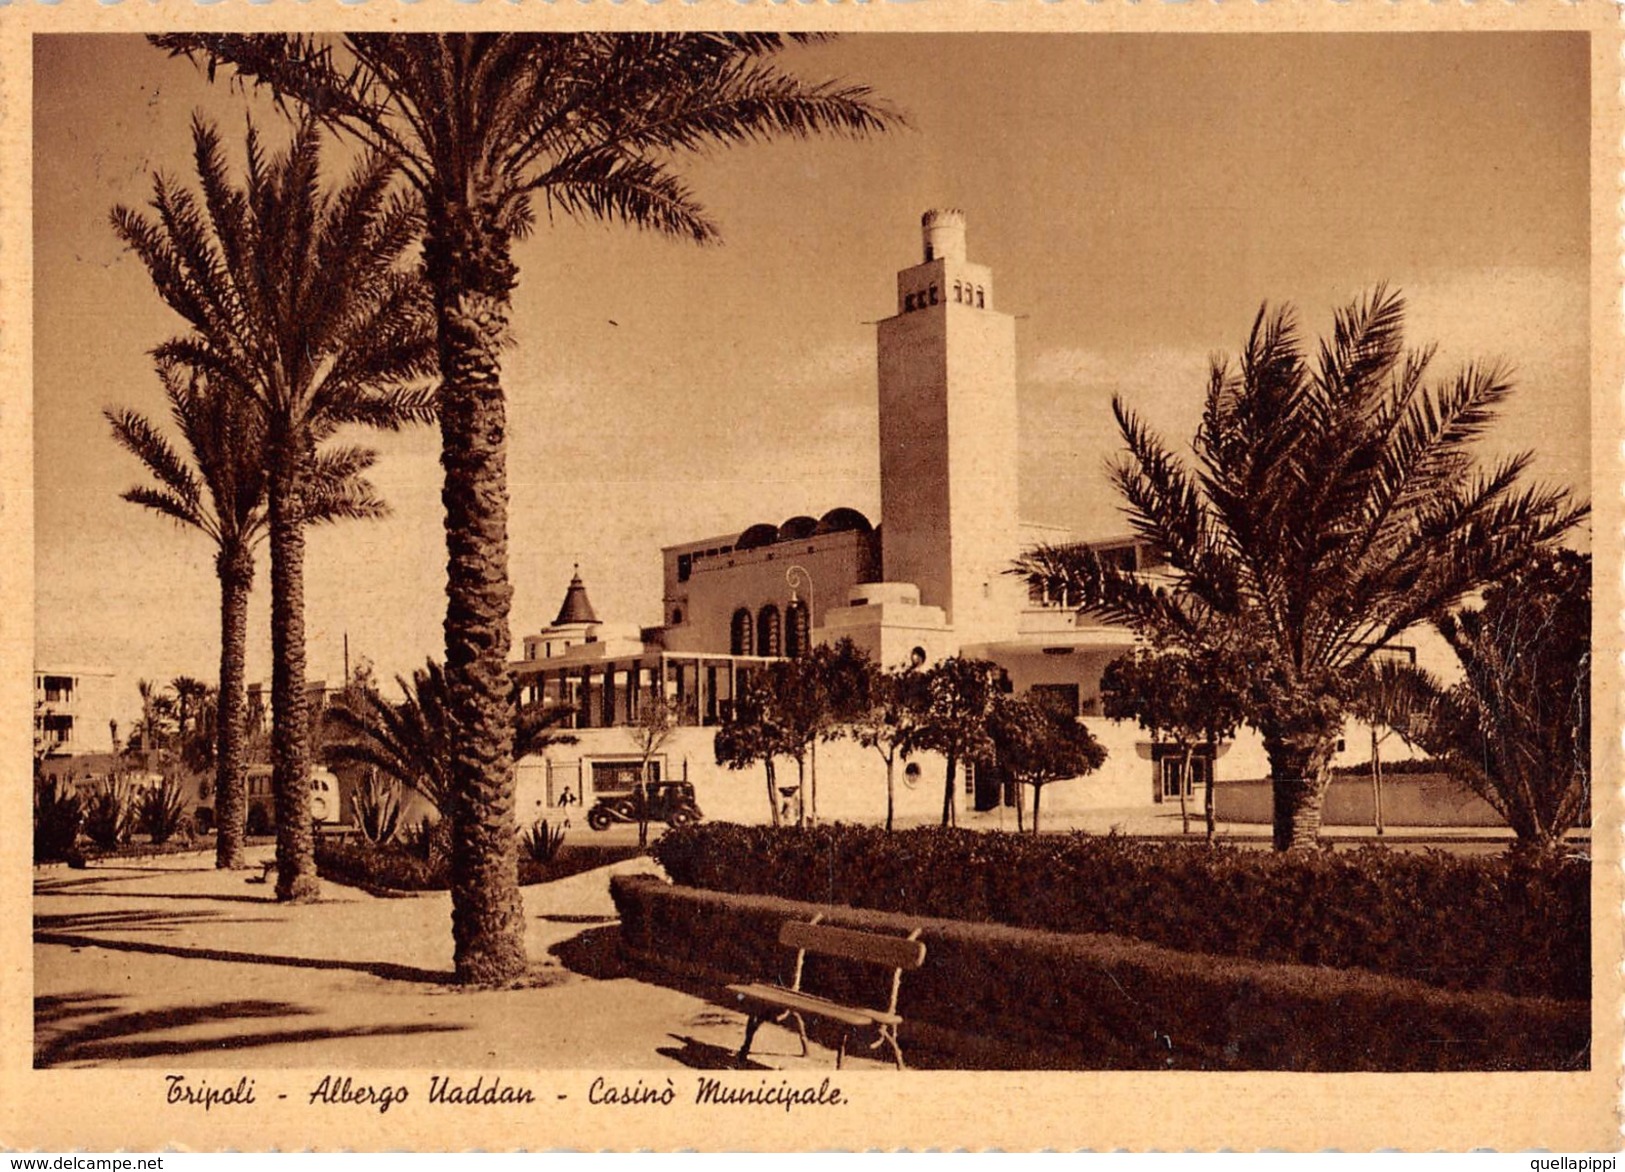 05273 "TRIPOLI - ALBERGO UADDAN - CASINO' MUNICIPALE" ANIMATA, AUTO '30,  FOTO 1937. CART  SPED 1979 - Libyen